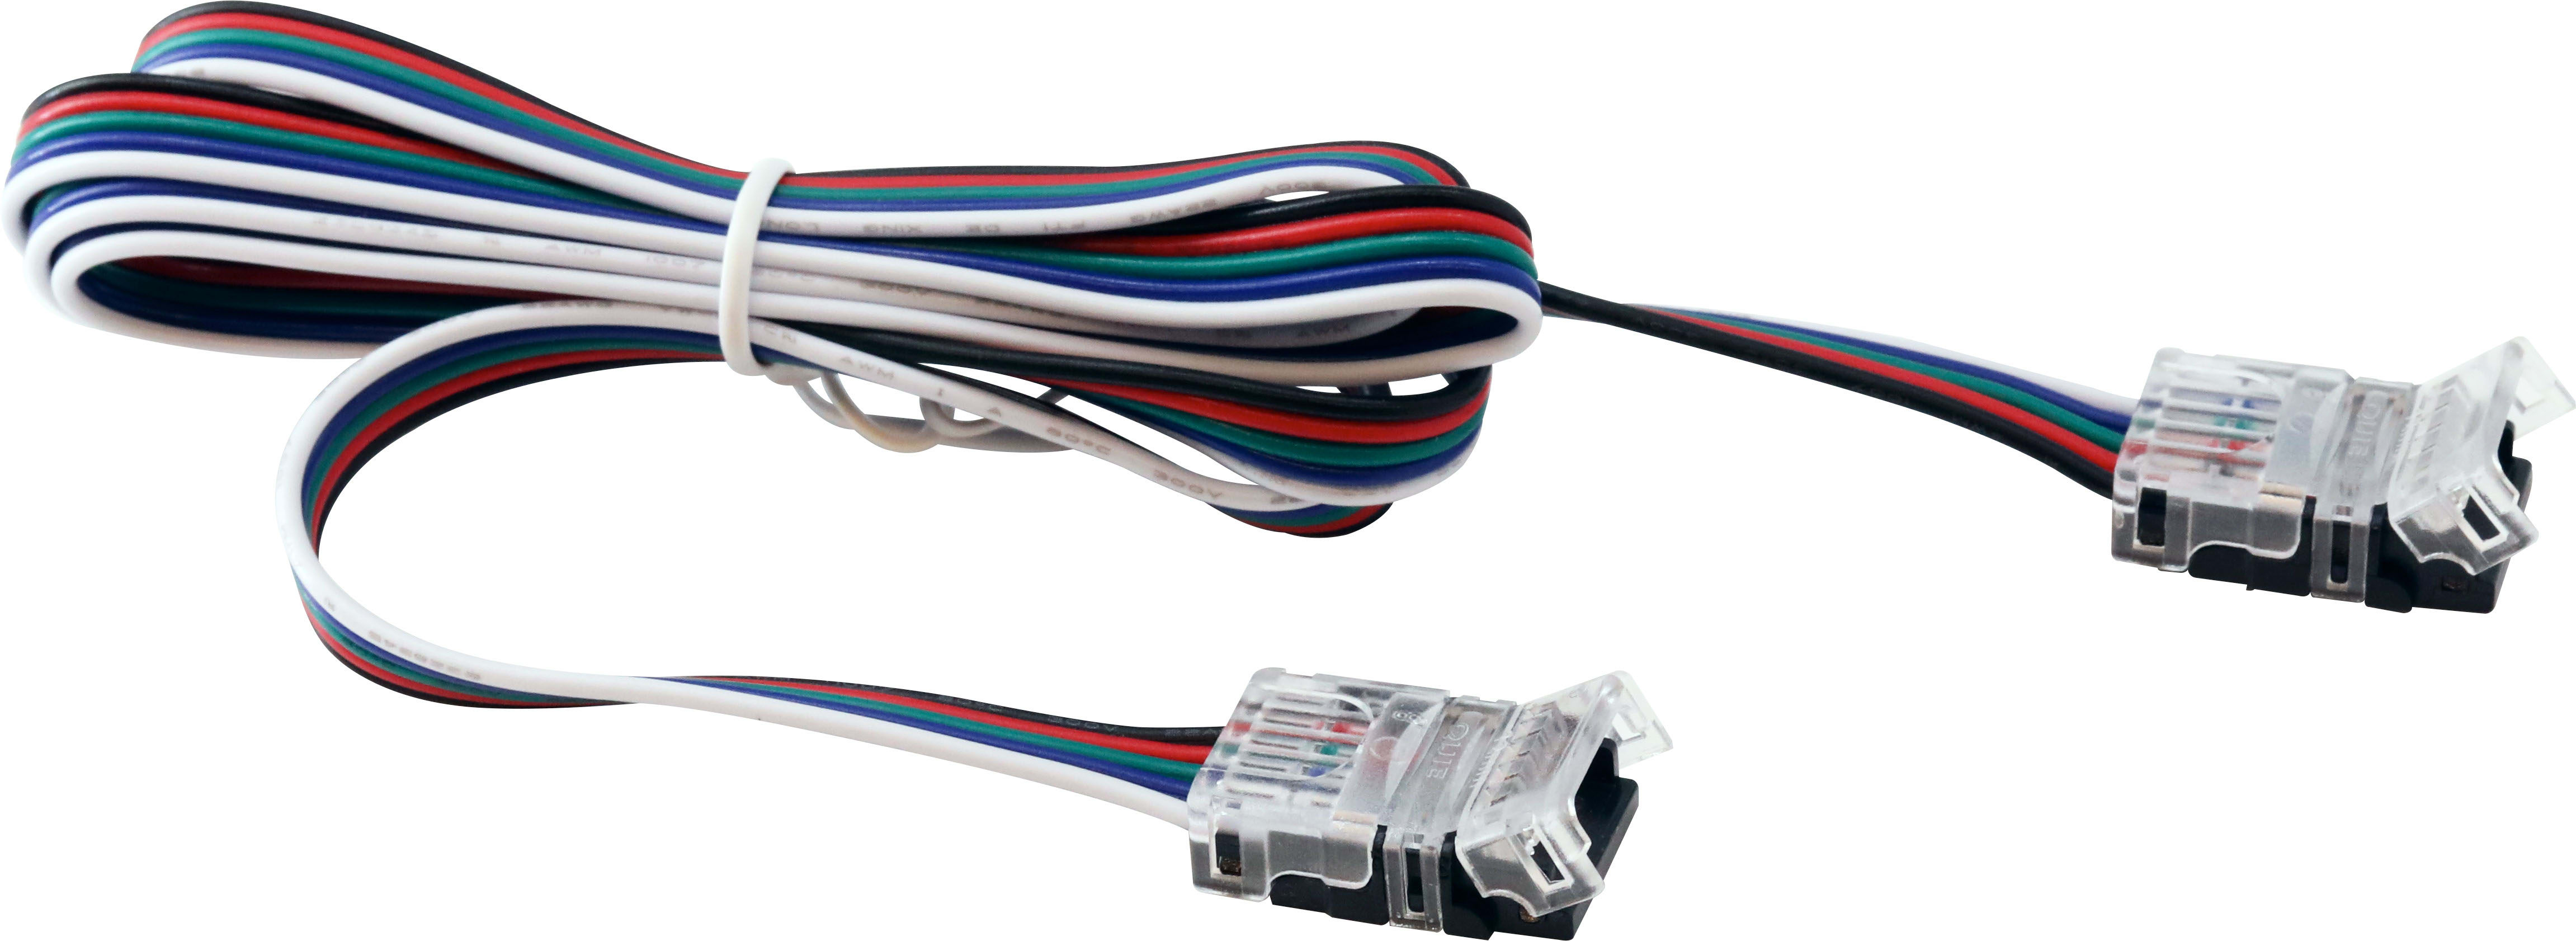 Unilamp - Multistrip tilbehør: 1 meter kabelskjøt med loddefrie hurtigkoblinger til strip. IP20.